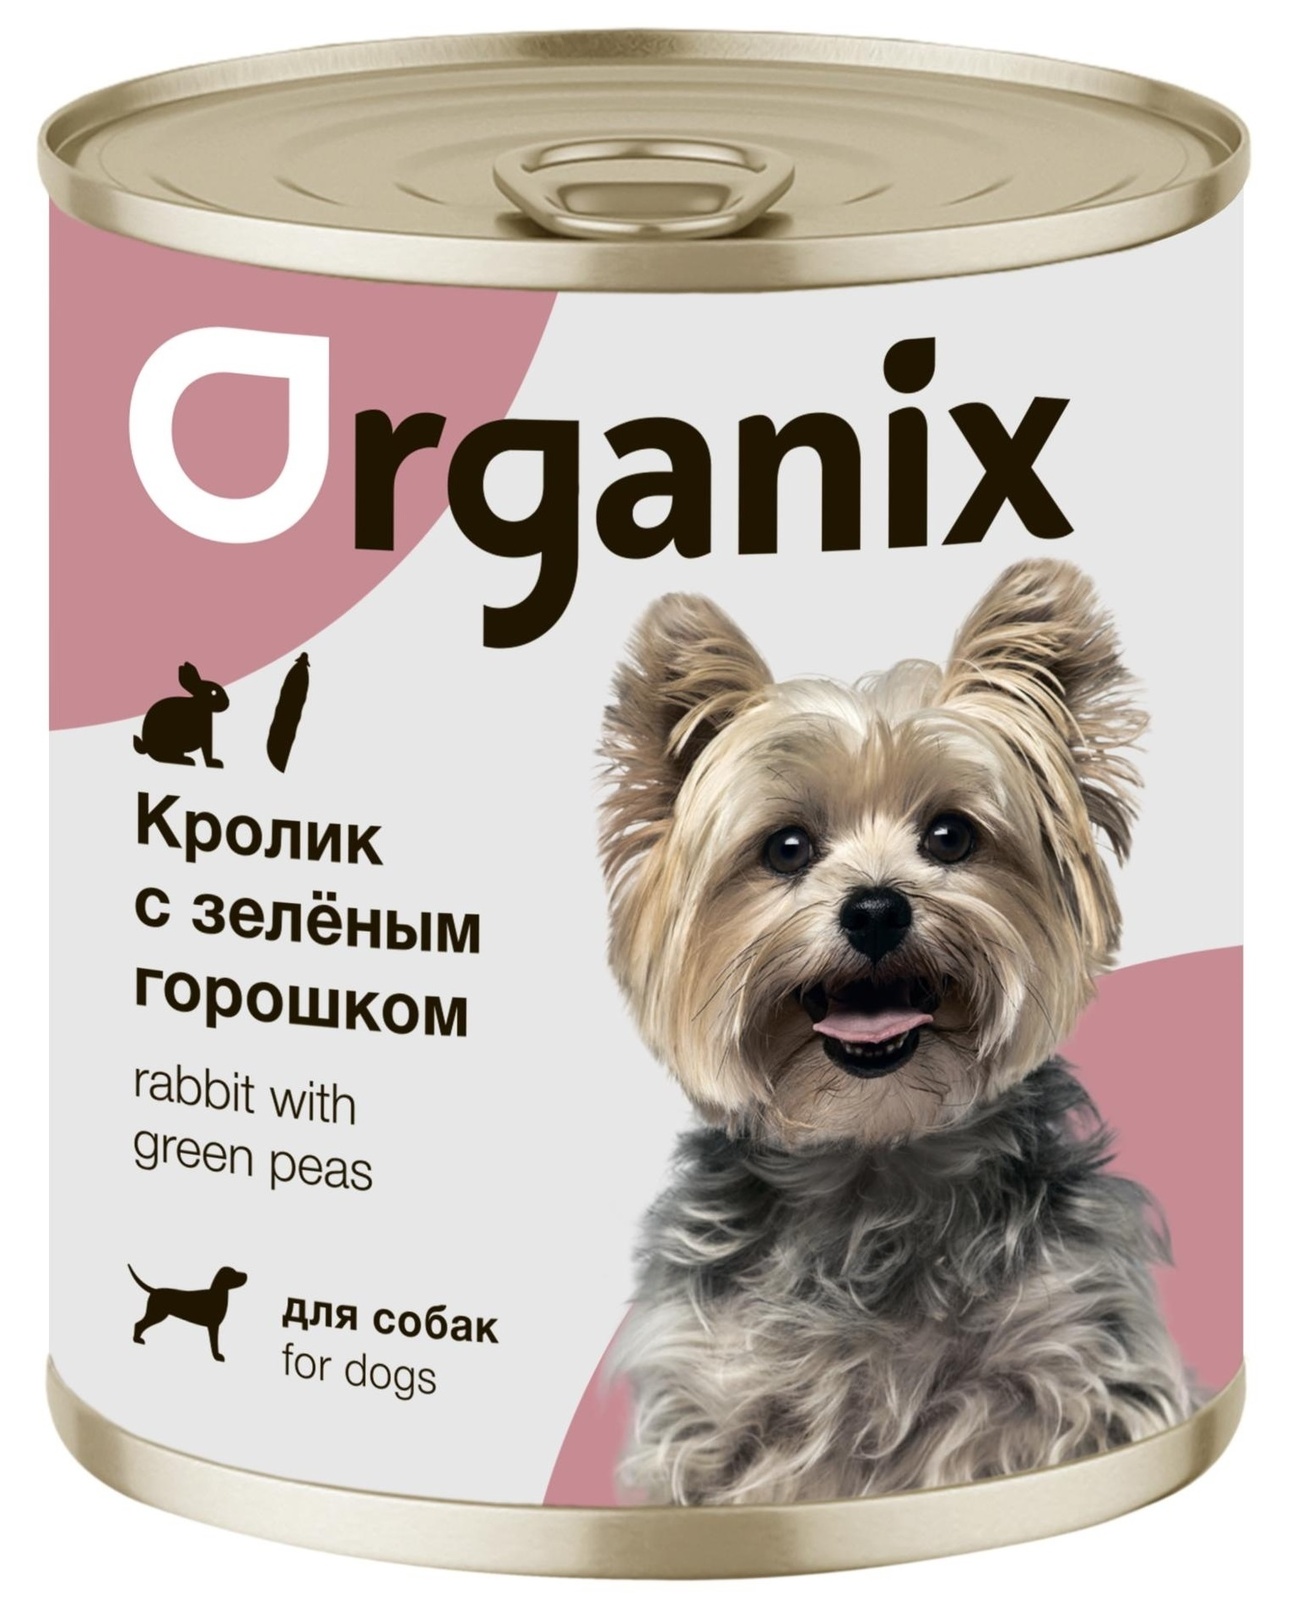 Organix консервы Organix консервы для собак Кролик с зеленым горошком (400 г) organix консервы organix монобелковые премиум консервы для собак с кониной 400 г